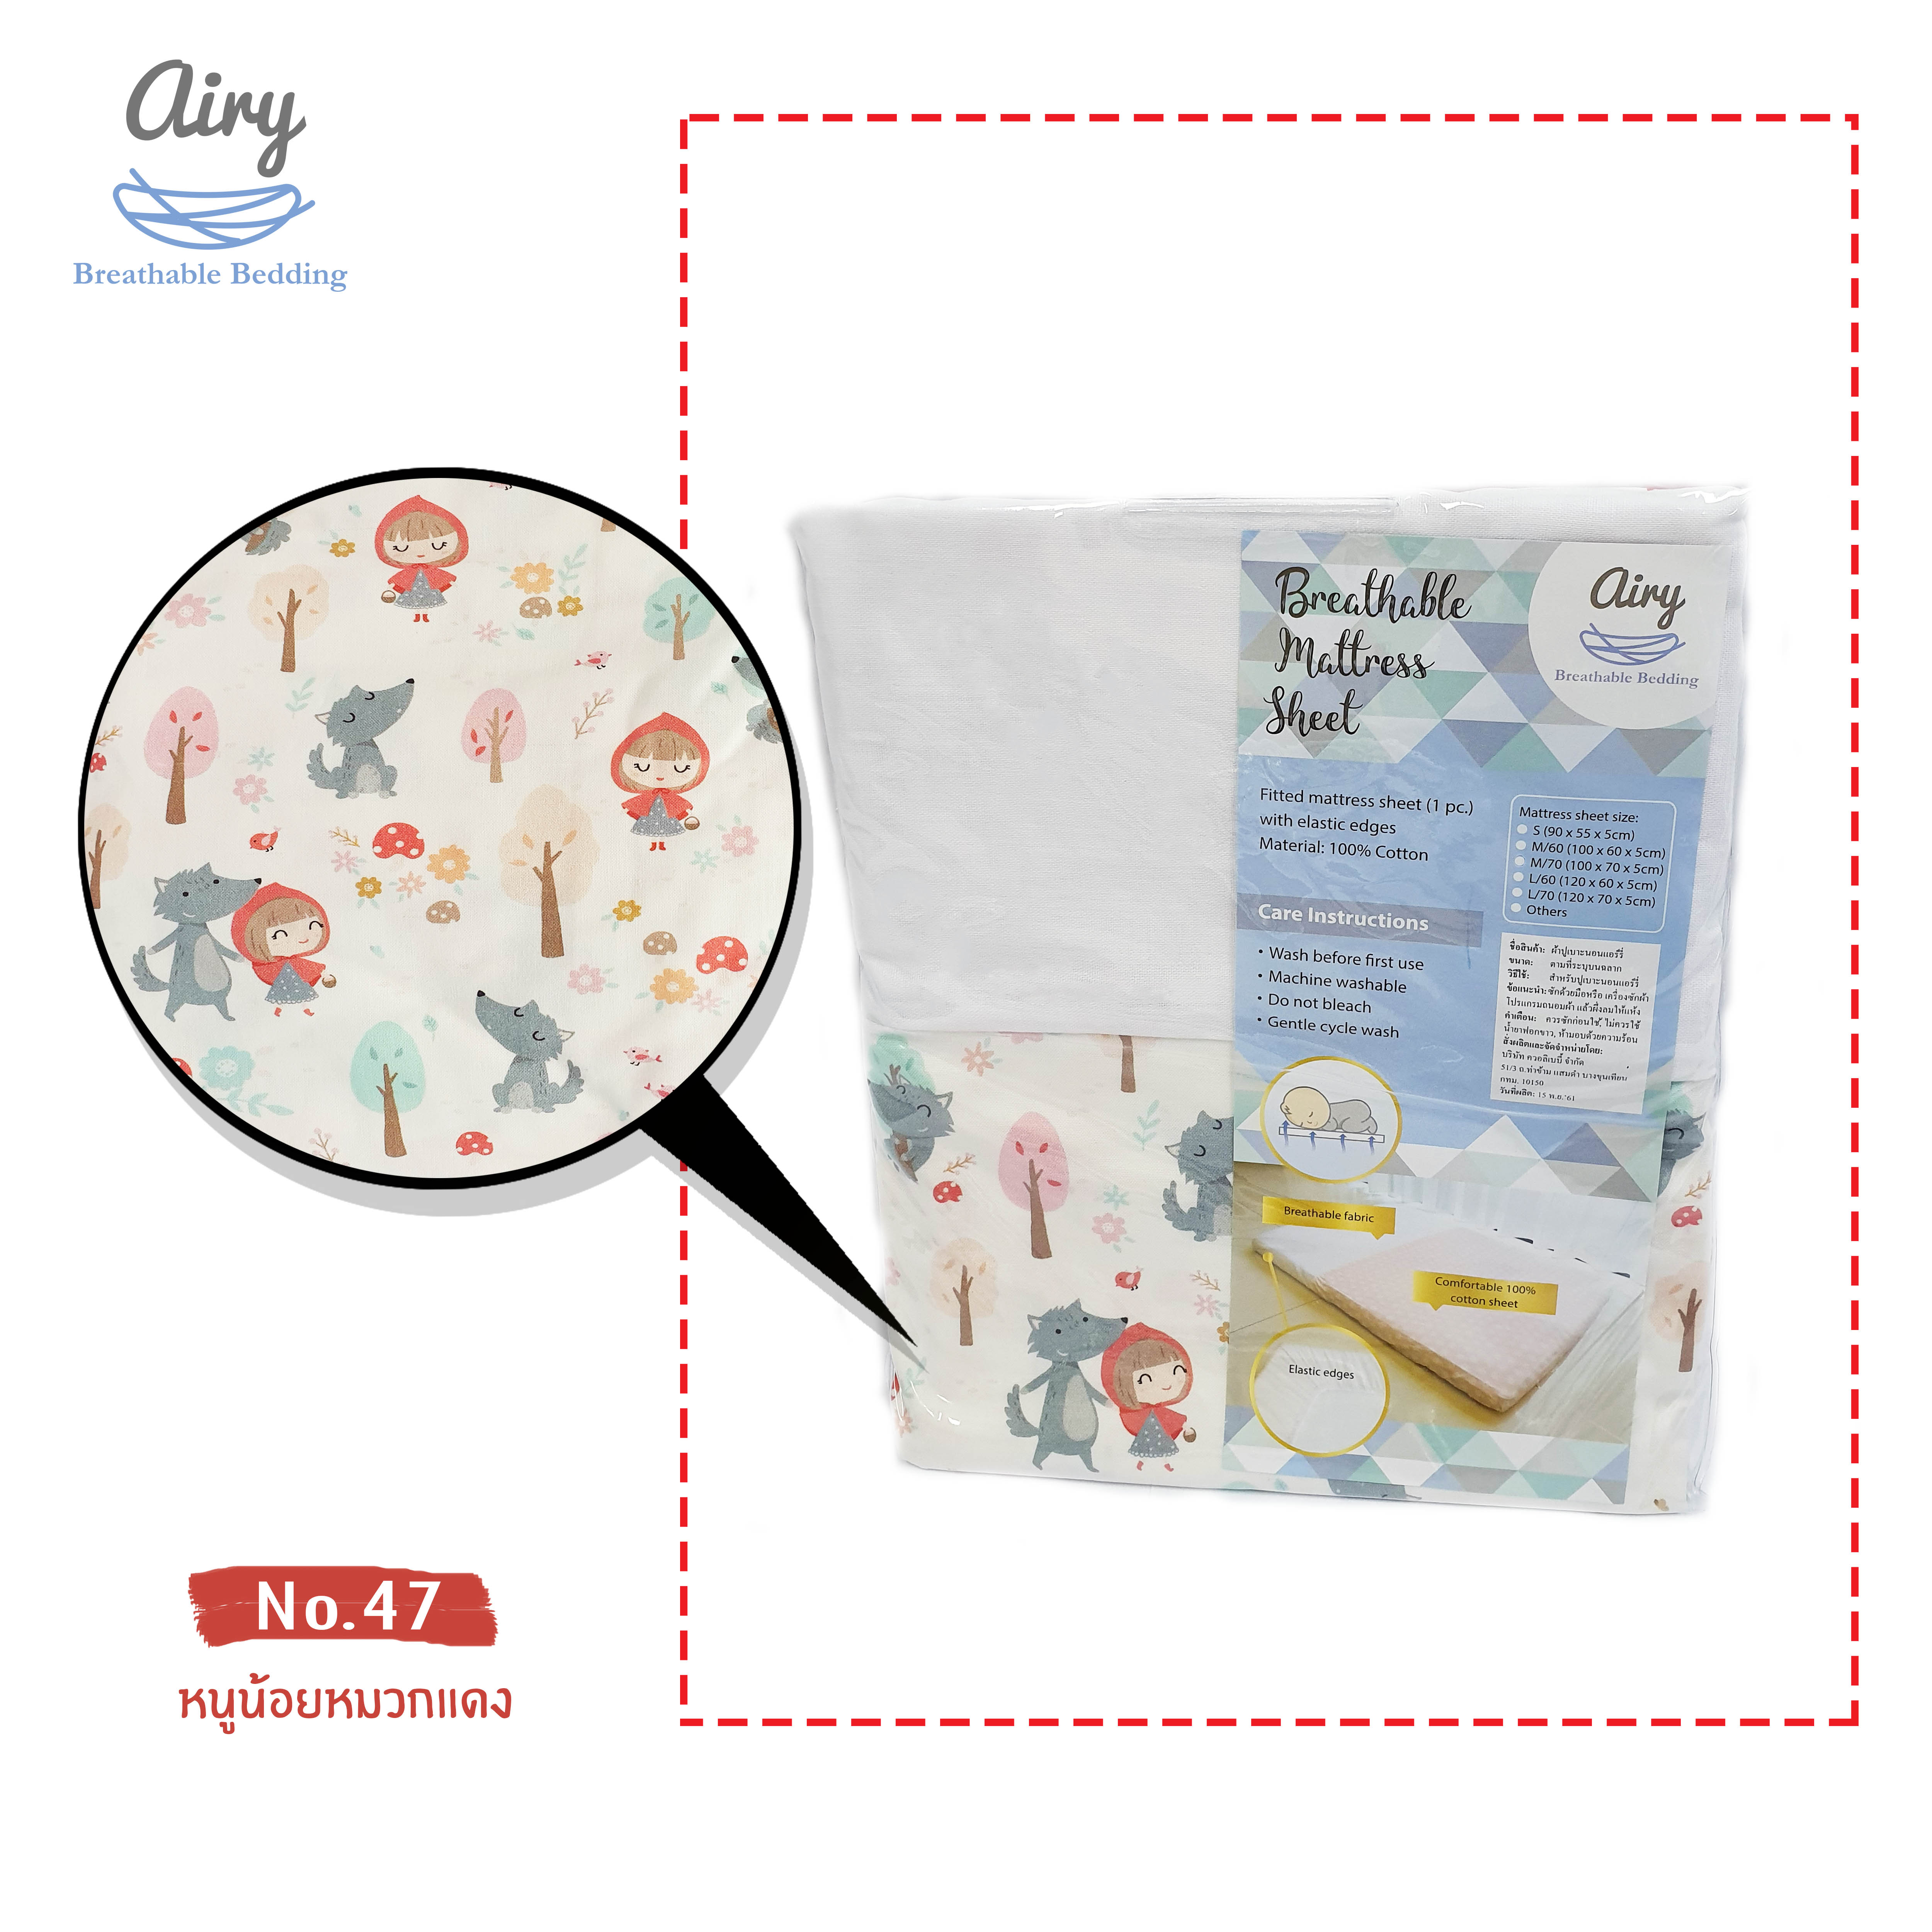 ผ้าปูเบาะนอนแอร์รี่ ไซส์ M/70 ( Airy Baby Breathable Mattress Sheet Size M/70 (70x100 cm)